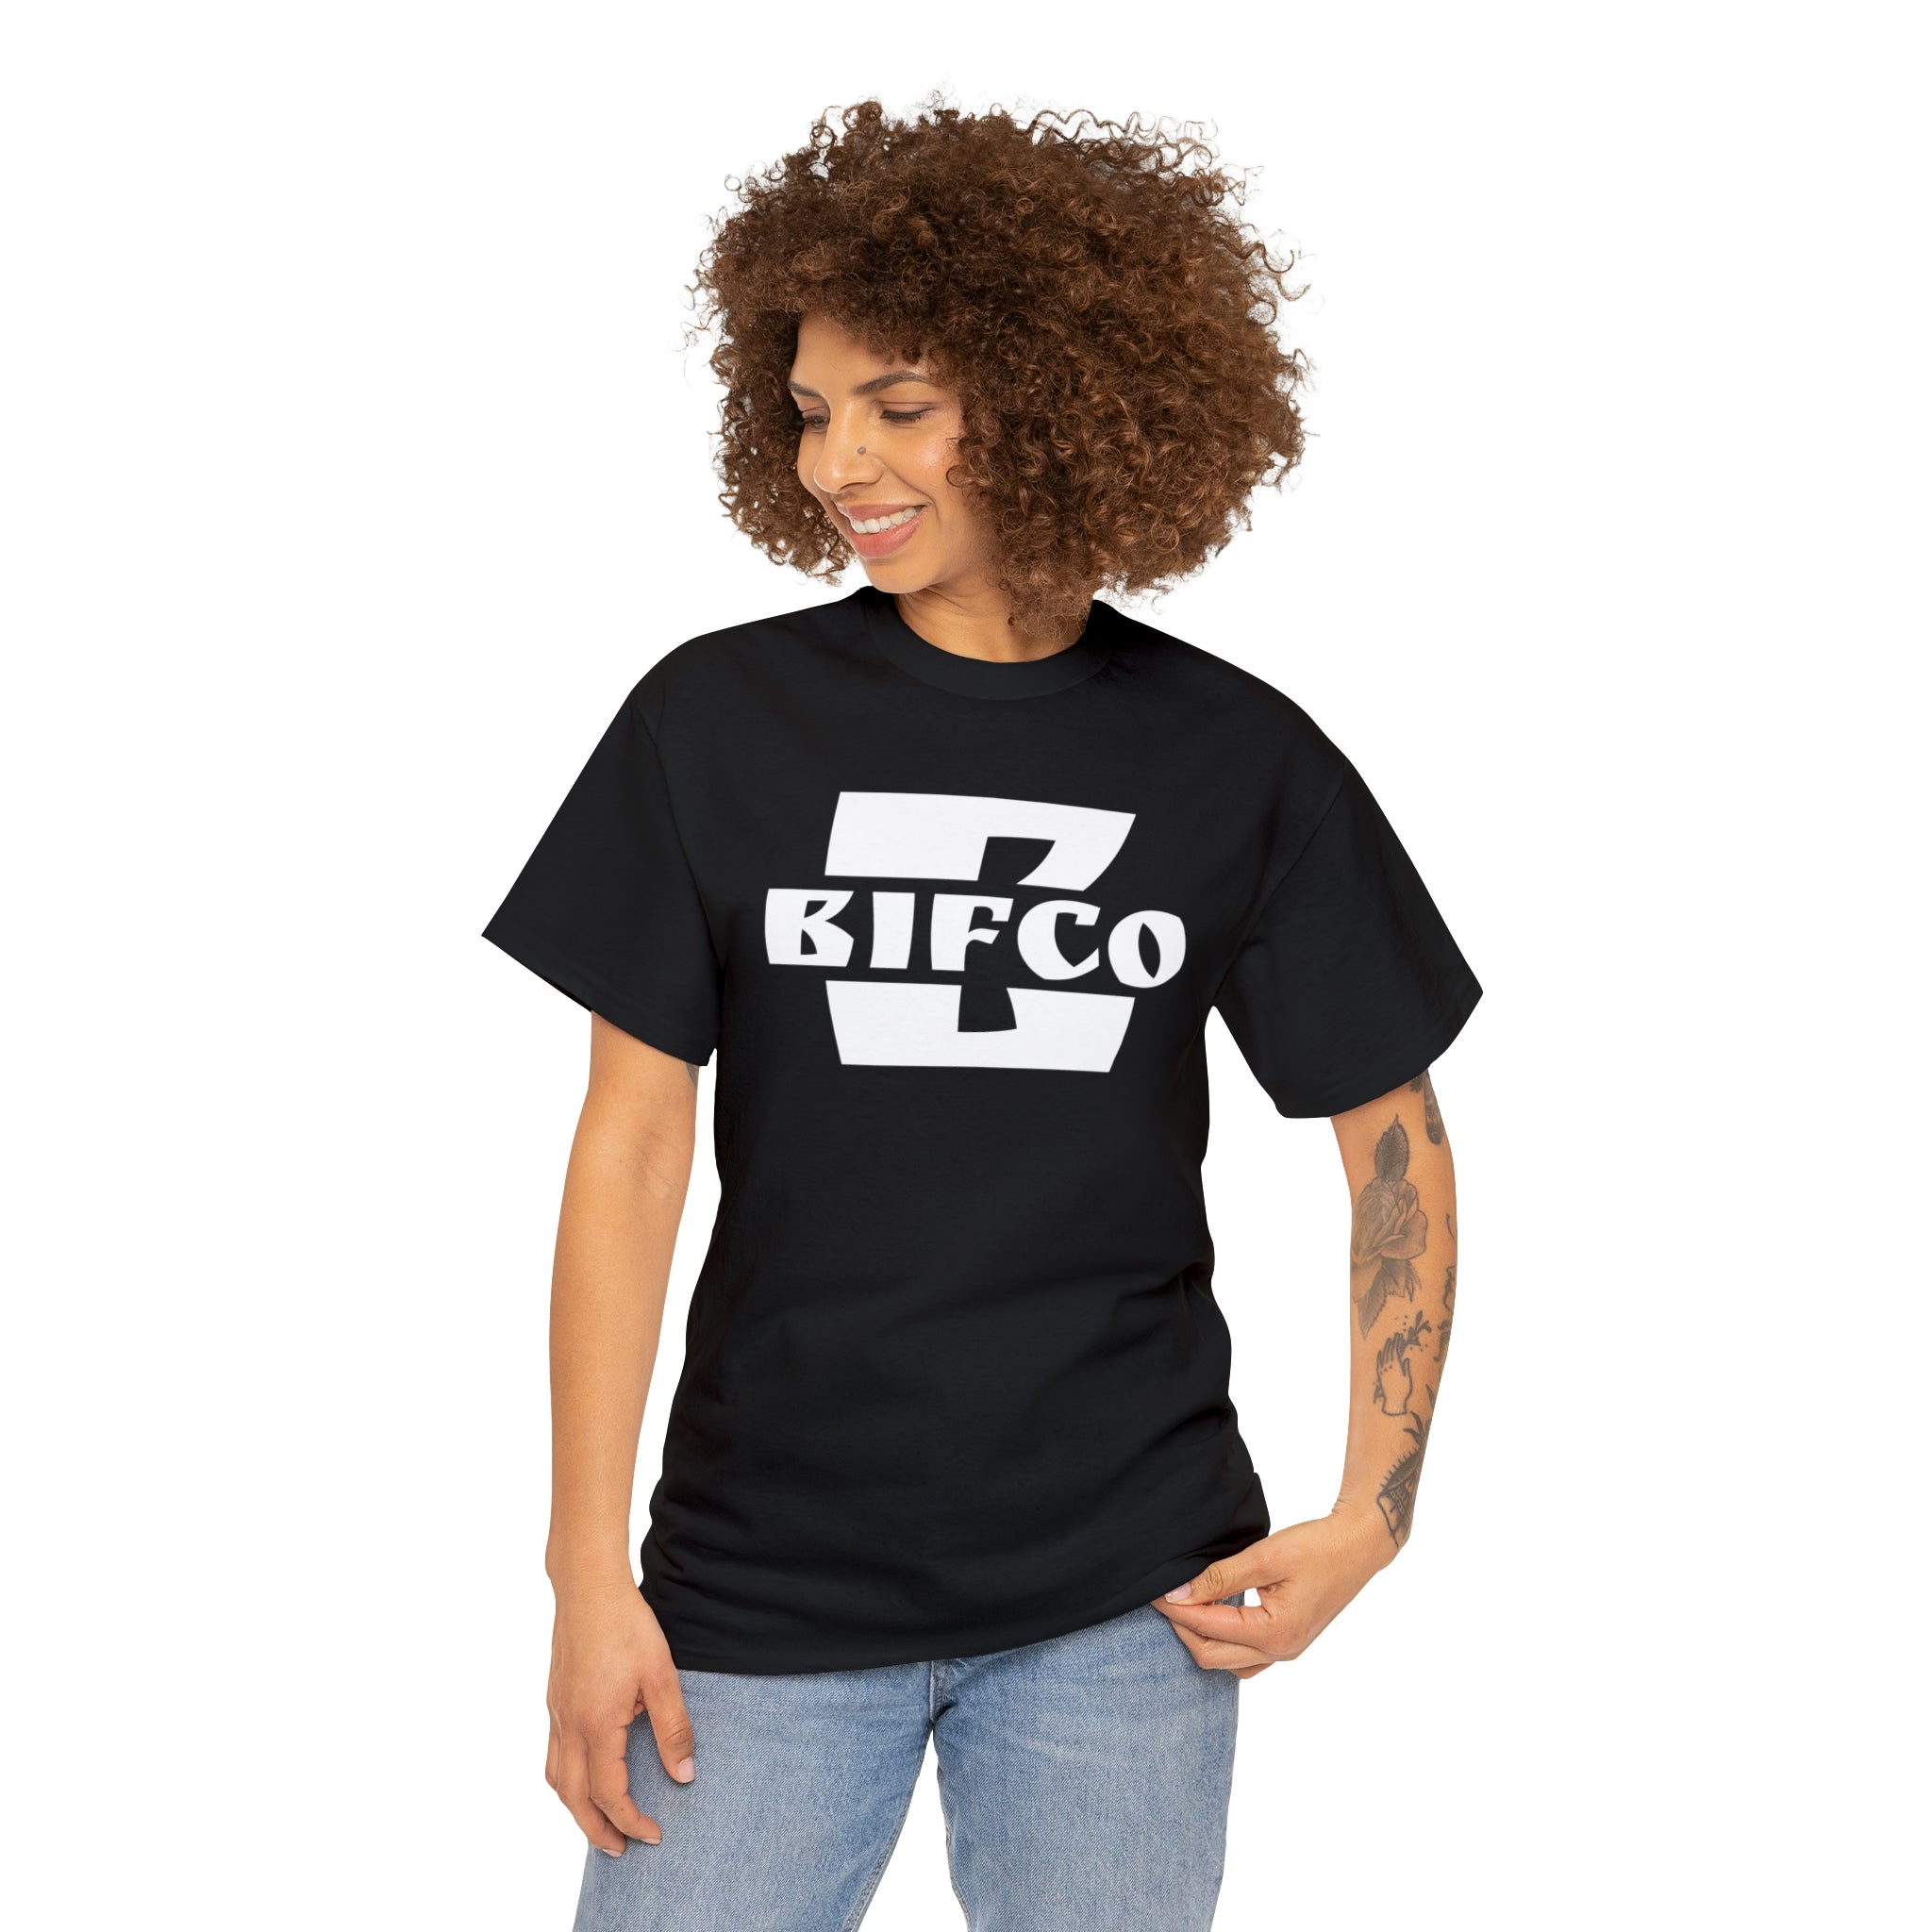 Bifco T Shirt